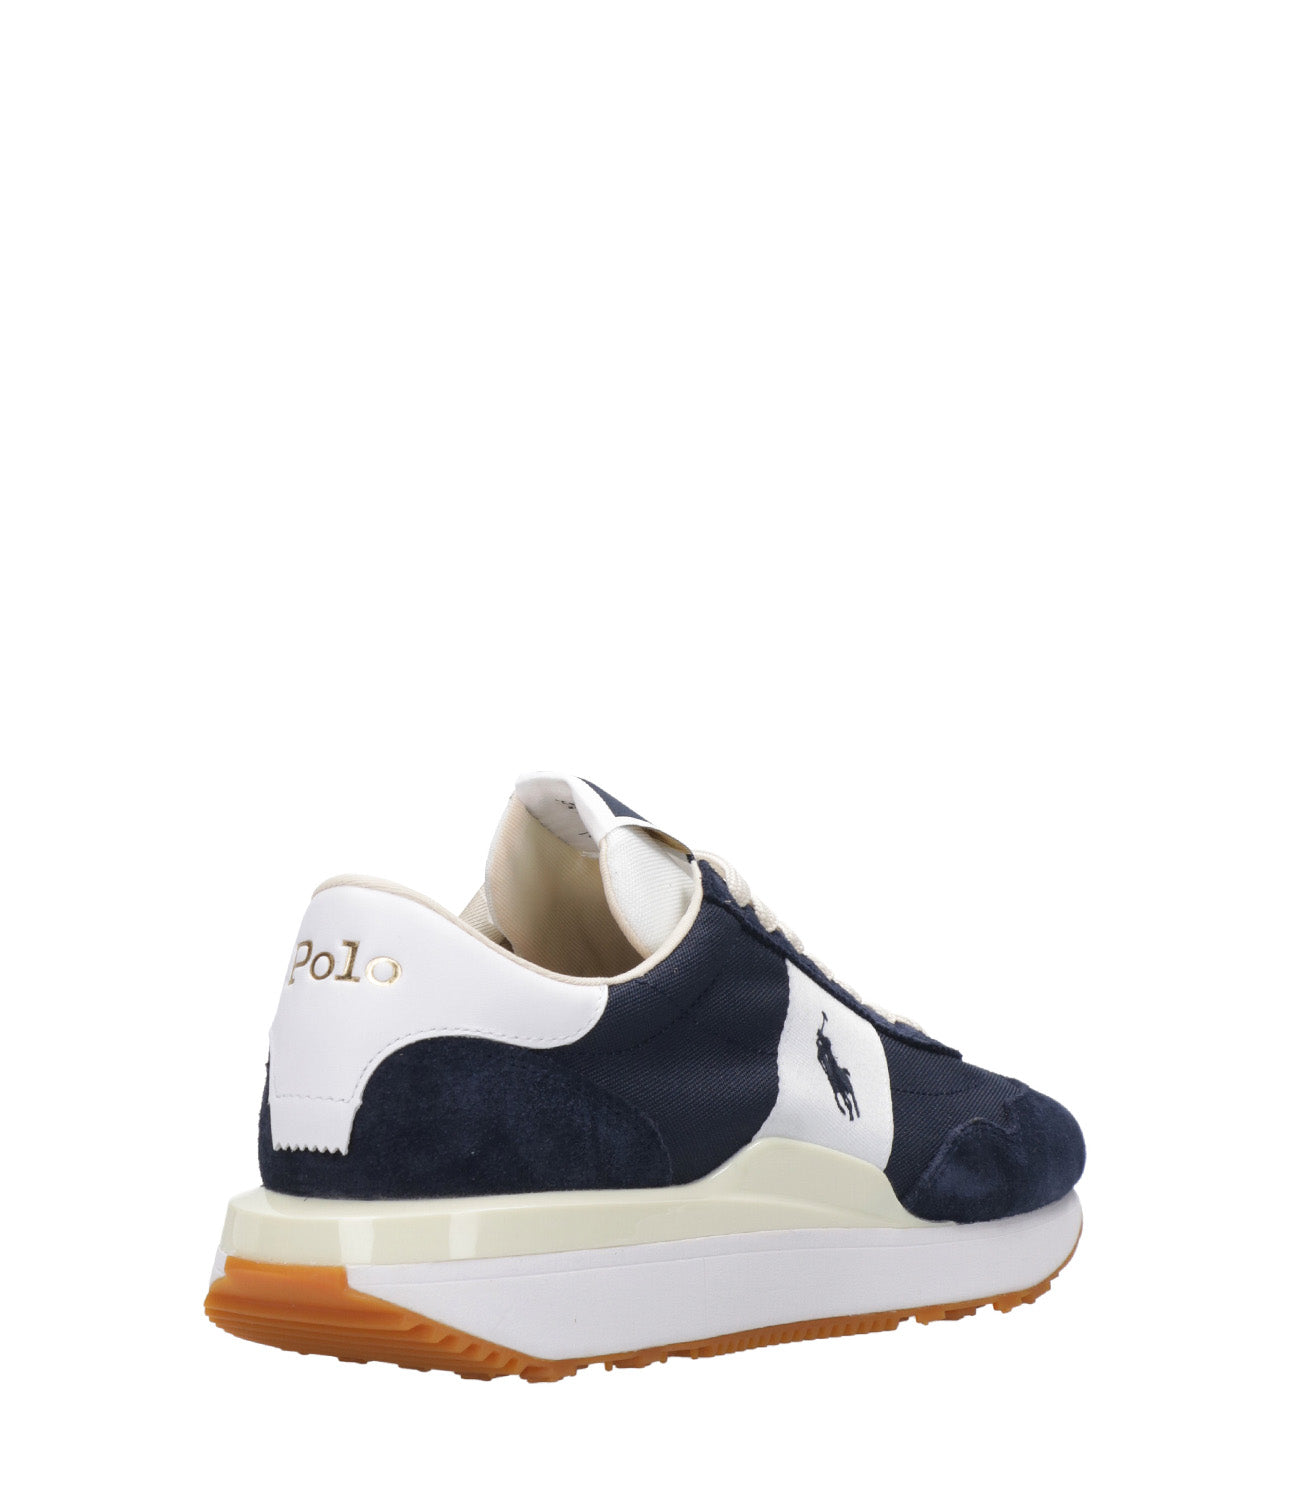 Polo Ralph Lauren | Sneakers Train 89 Blu navy e Bianco